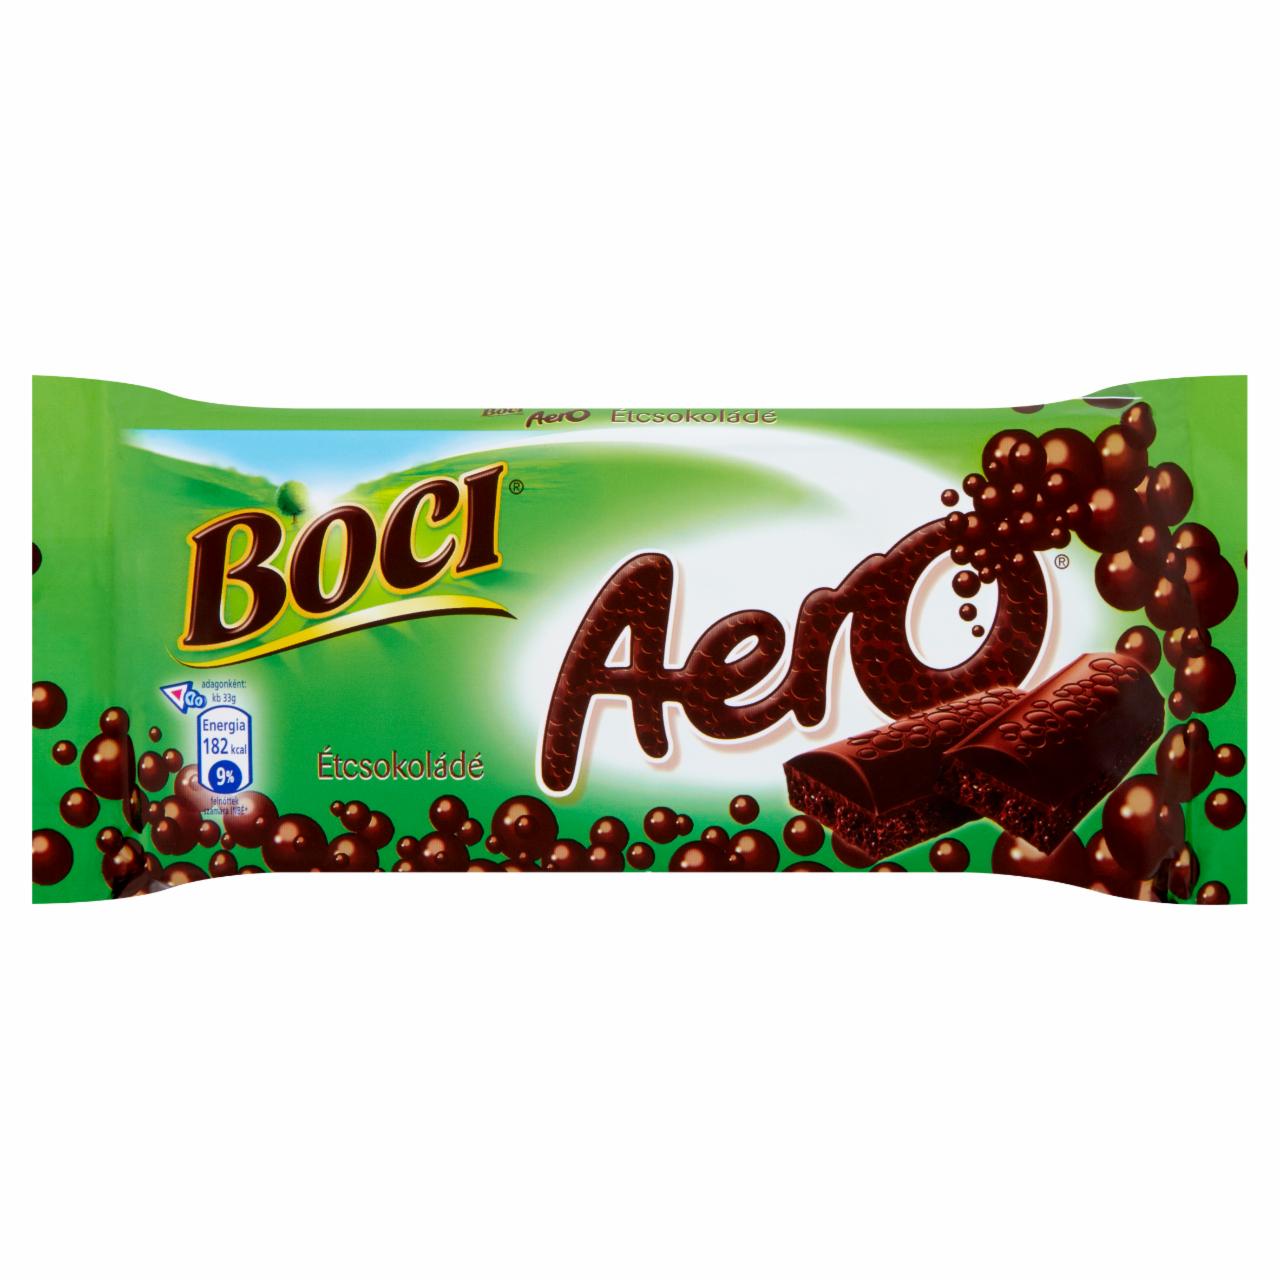 Képek - Boci Aero étcsokoládé 74 g